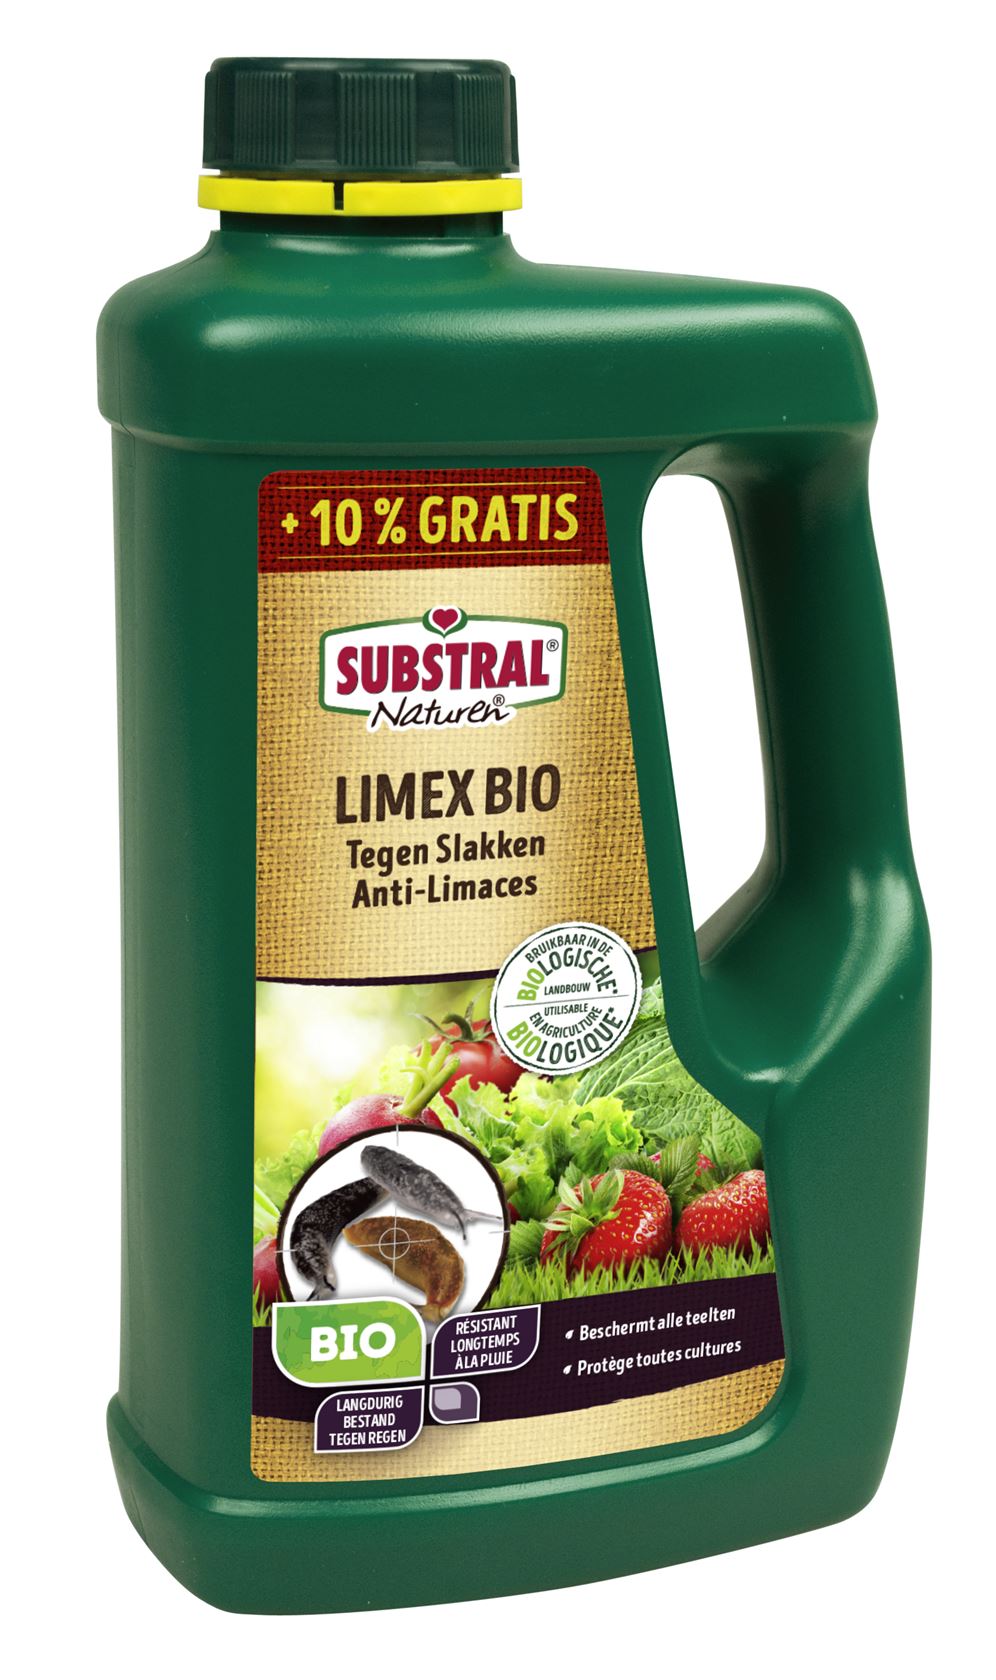 Substral-Naturen-Limex-Bio-Tegen-Slakken-850g-10-gratis